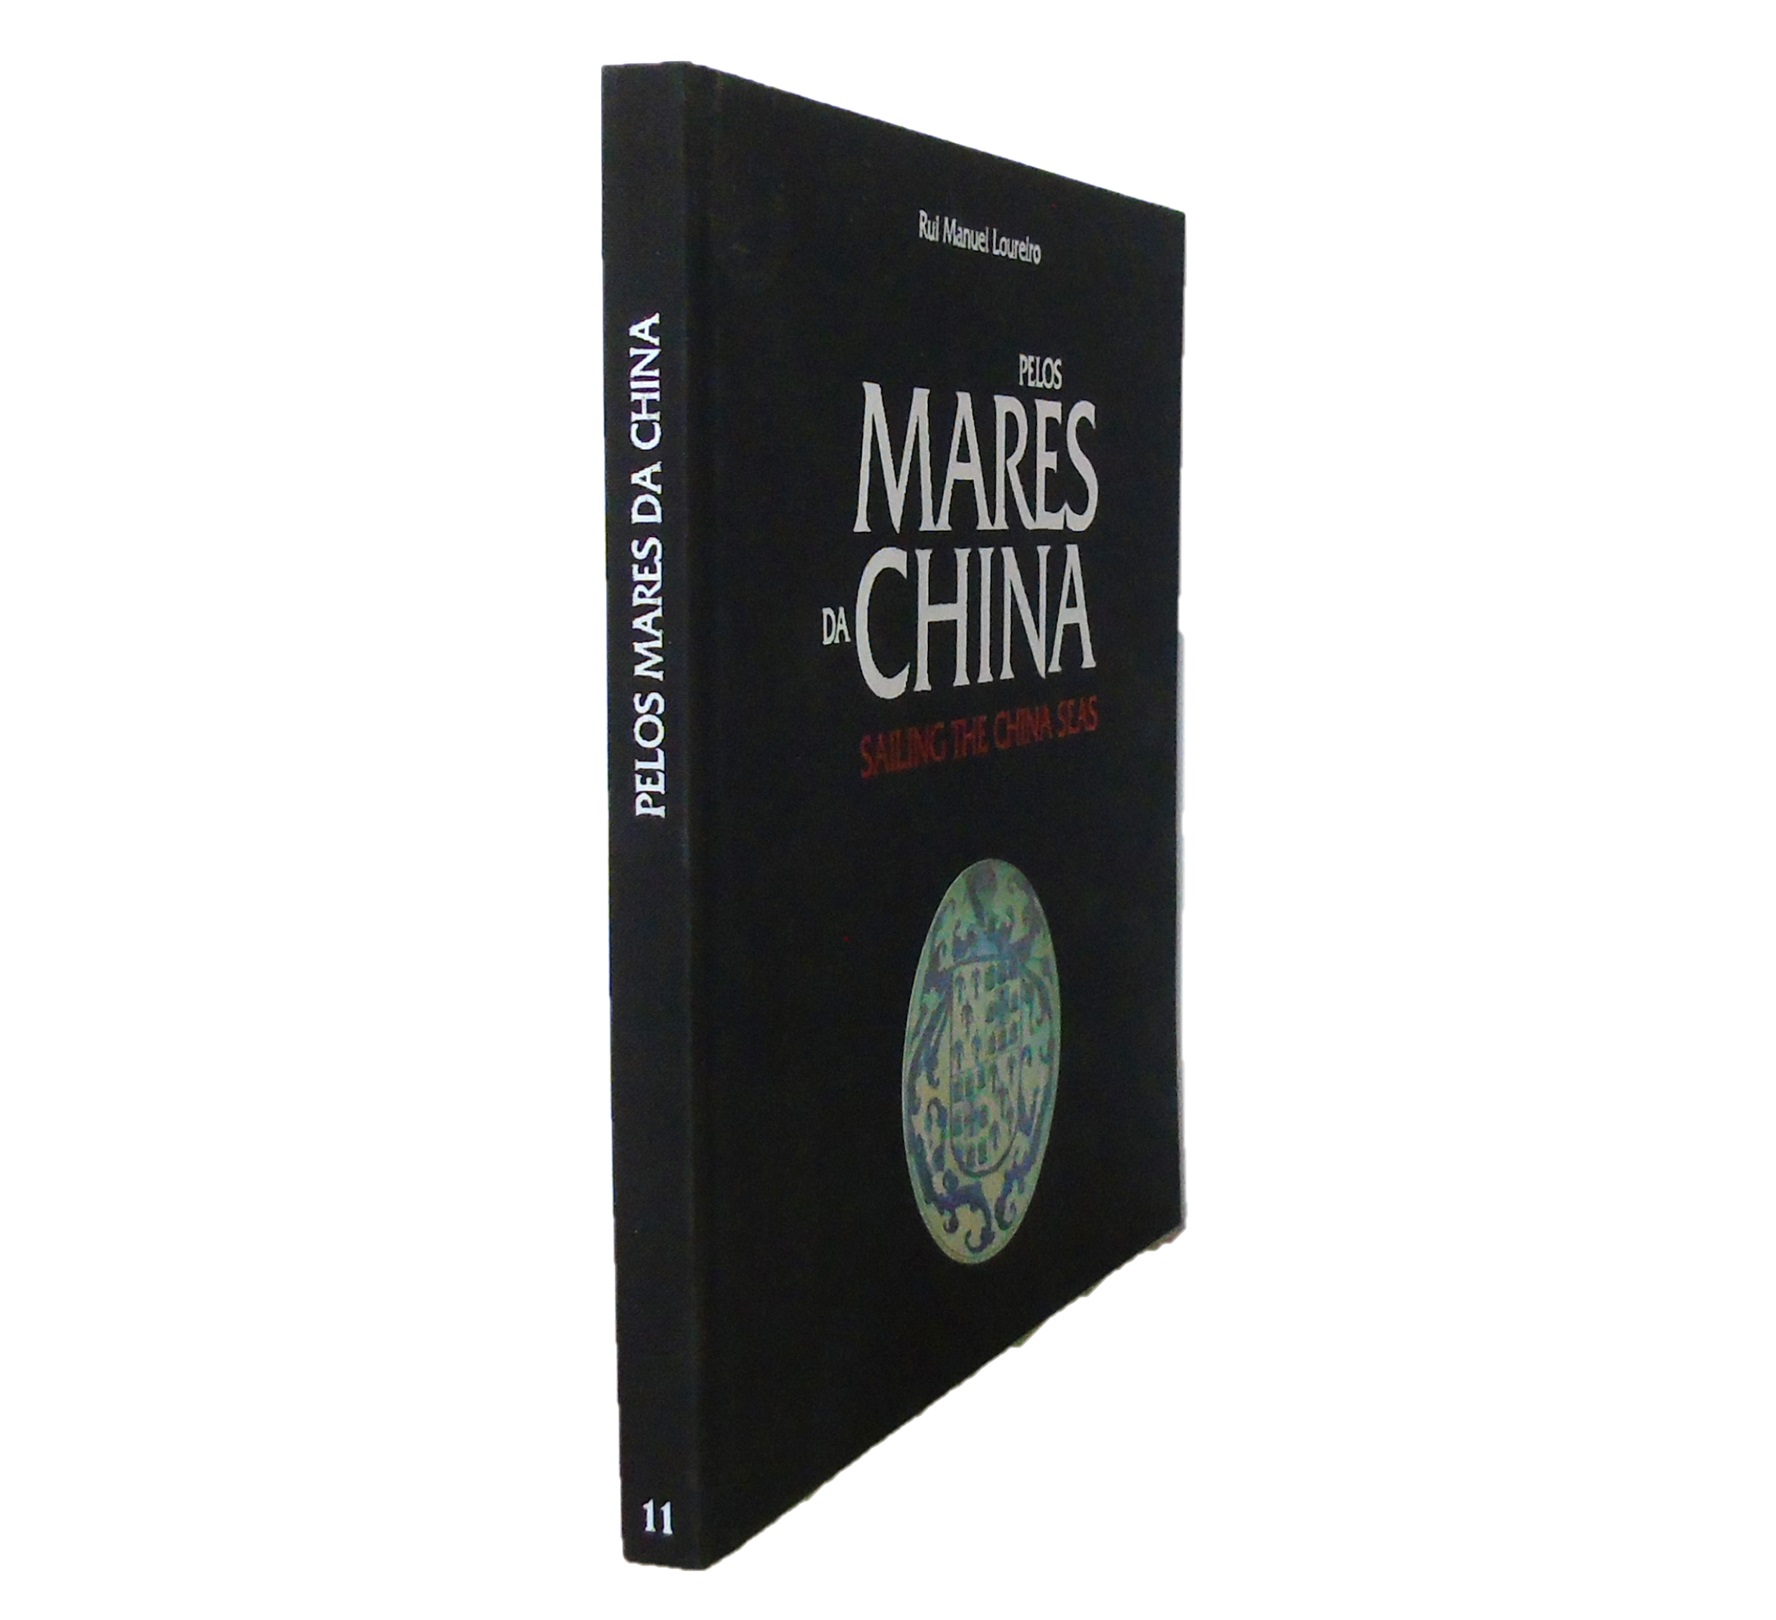 PELOS MARES DA CHINA. HISTÓRIA BREVE DAS RELAÇÕES LUSO-CHINESAS NO SÉCULO XVI